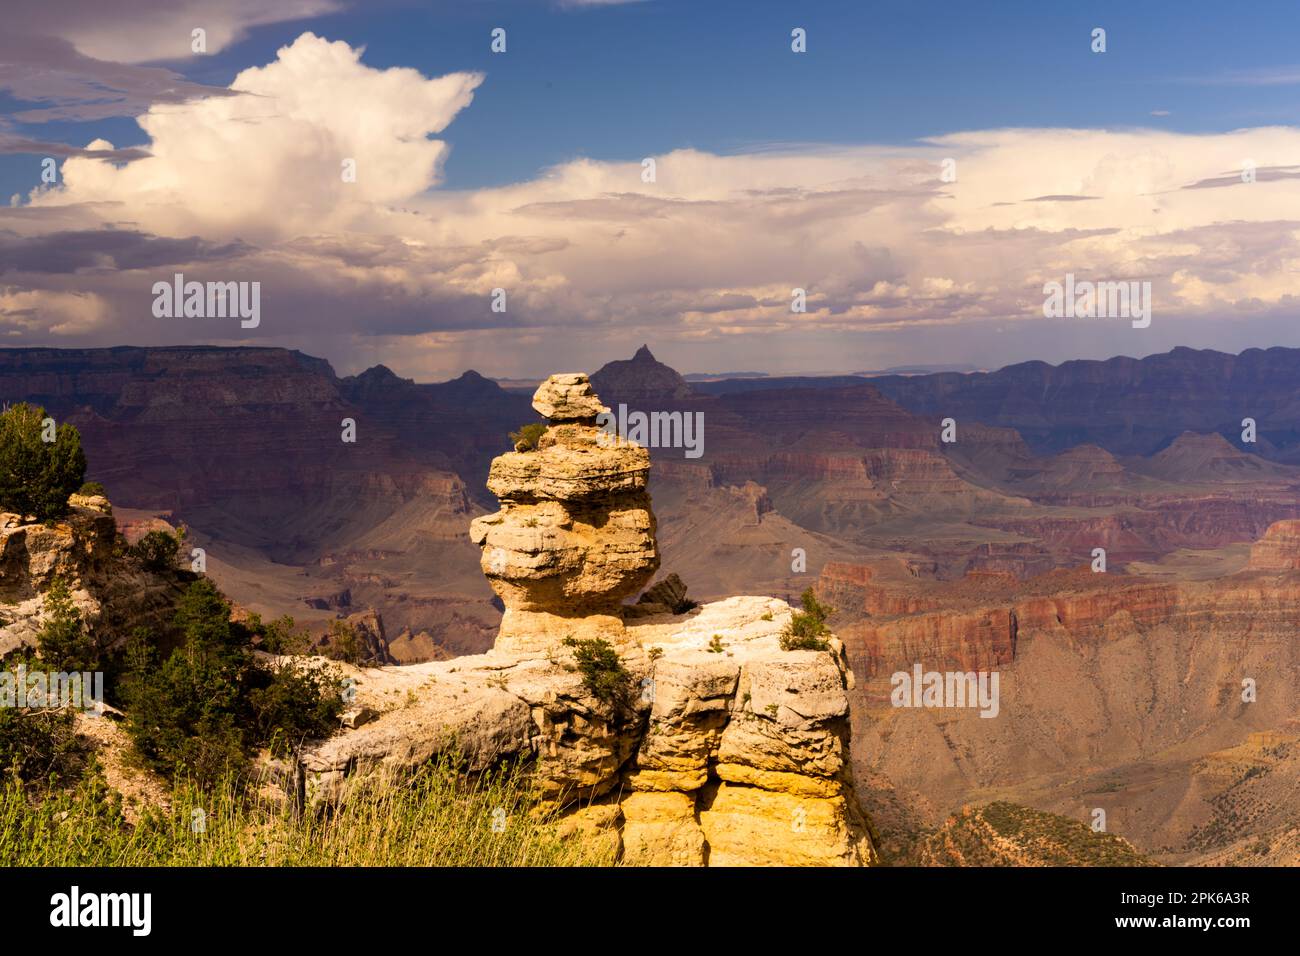 Majestic Grand Canyon, Arizona, USA Stock Photo